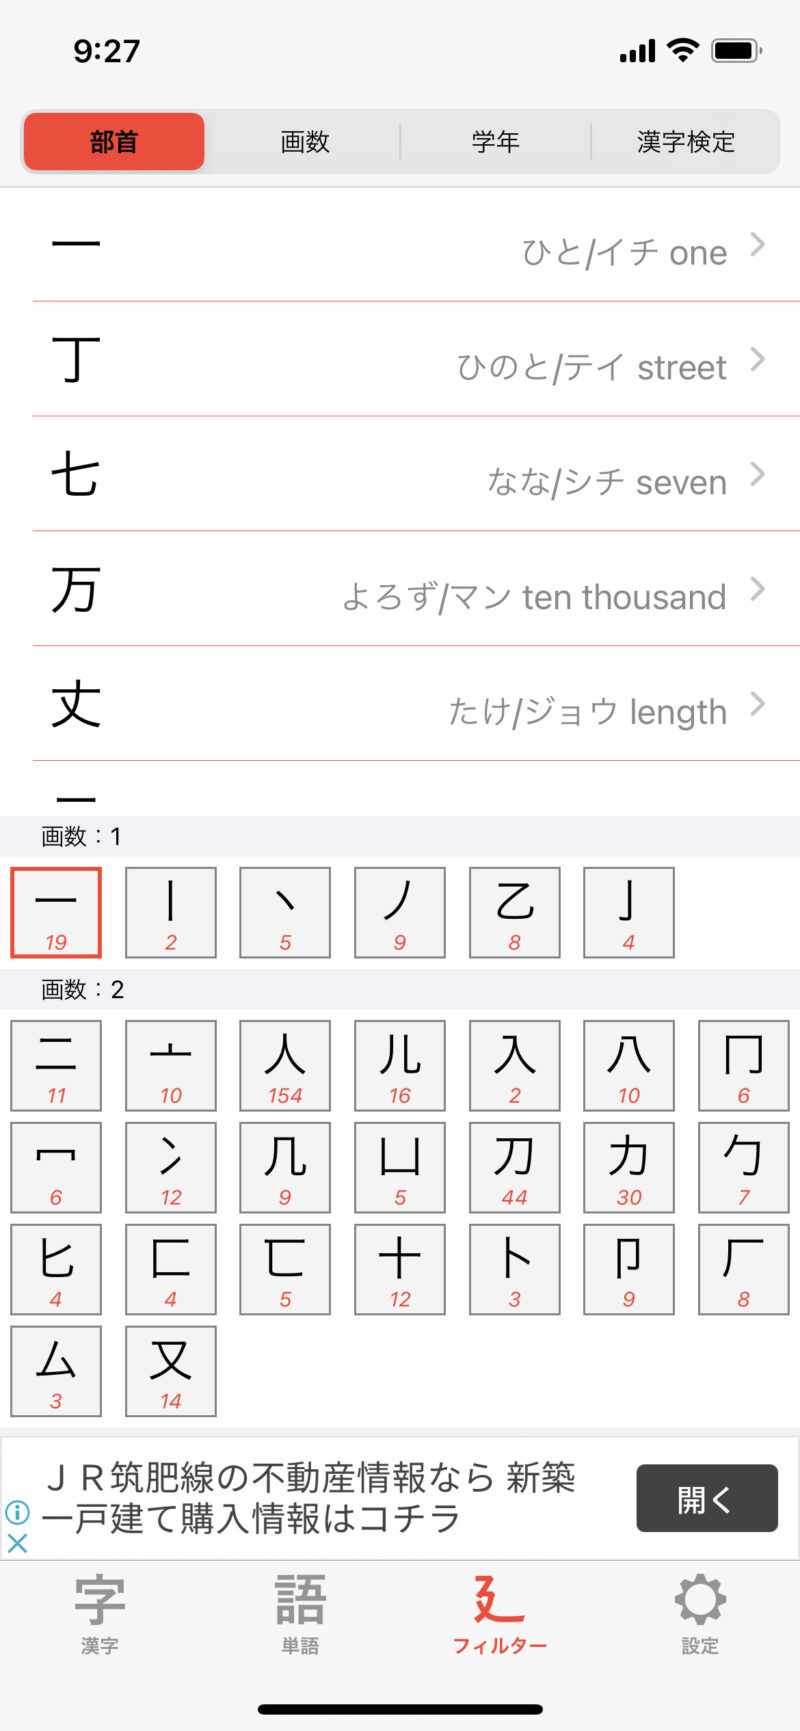 漢字が読めない場合は検索アプリをお勧めします 僕が使っている漢字検索機能をご紹介 店舗せどりと中国輸入で独立 30歳までに法人化も達成します